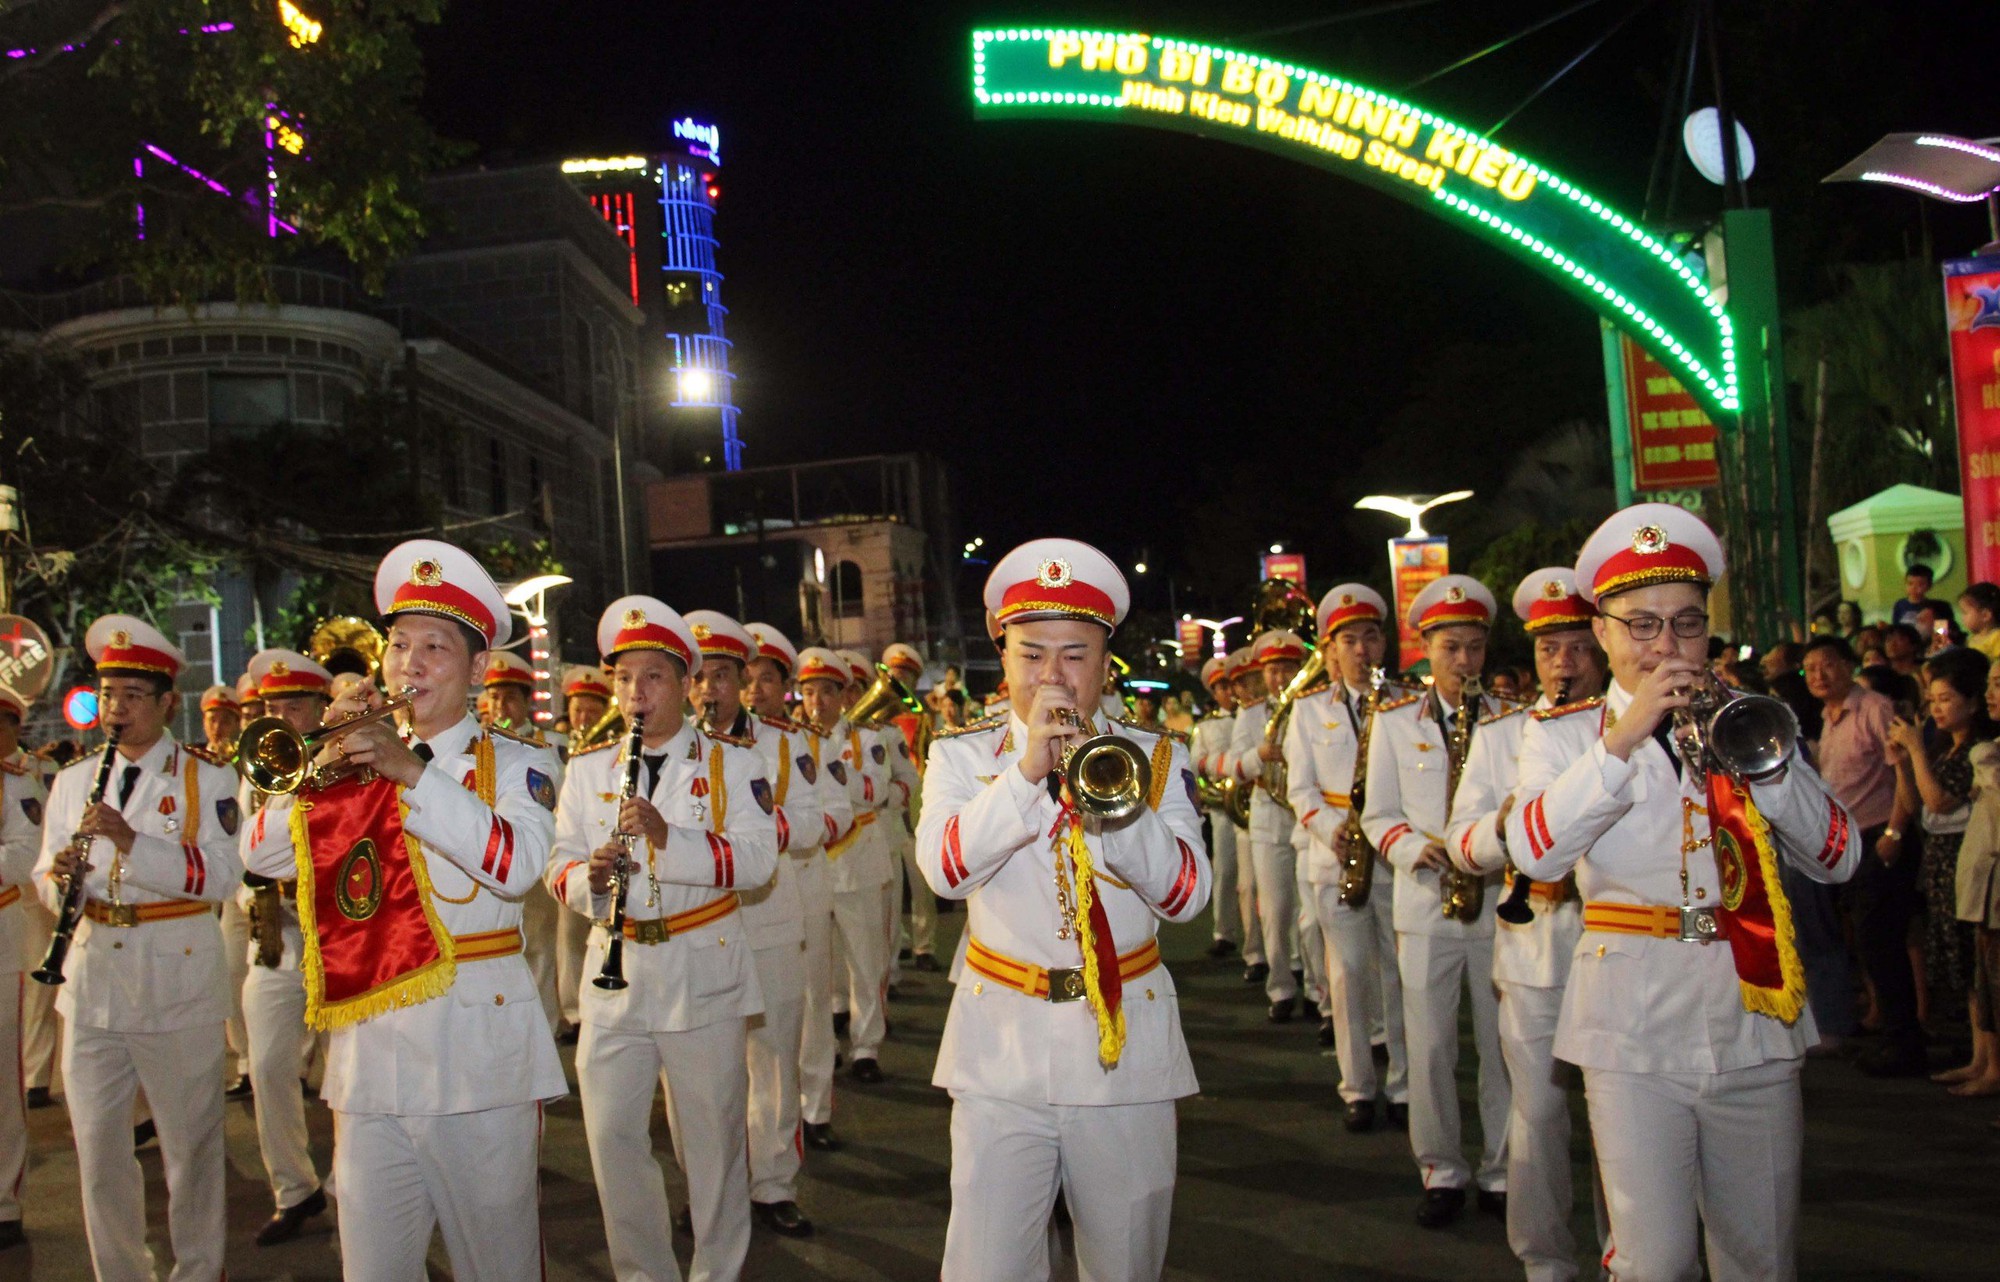 CLIP: Đoàn nghi lễ Công an nhân dân biểu diễn tại bến Ninh Kiều - Ảnh 10.